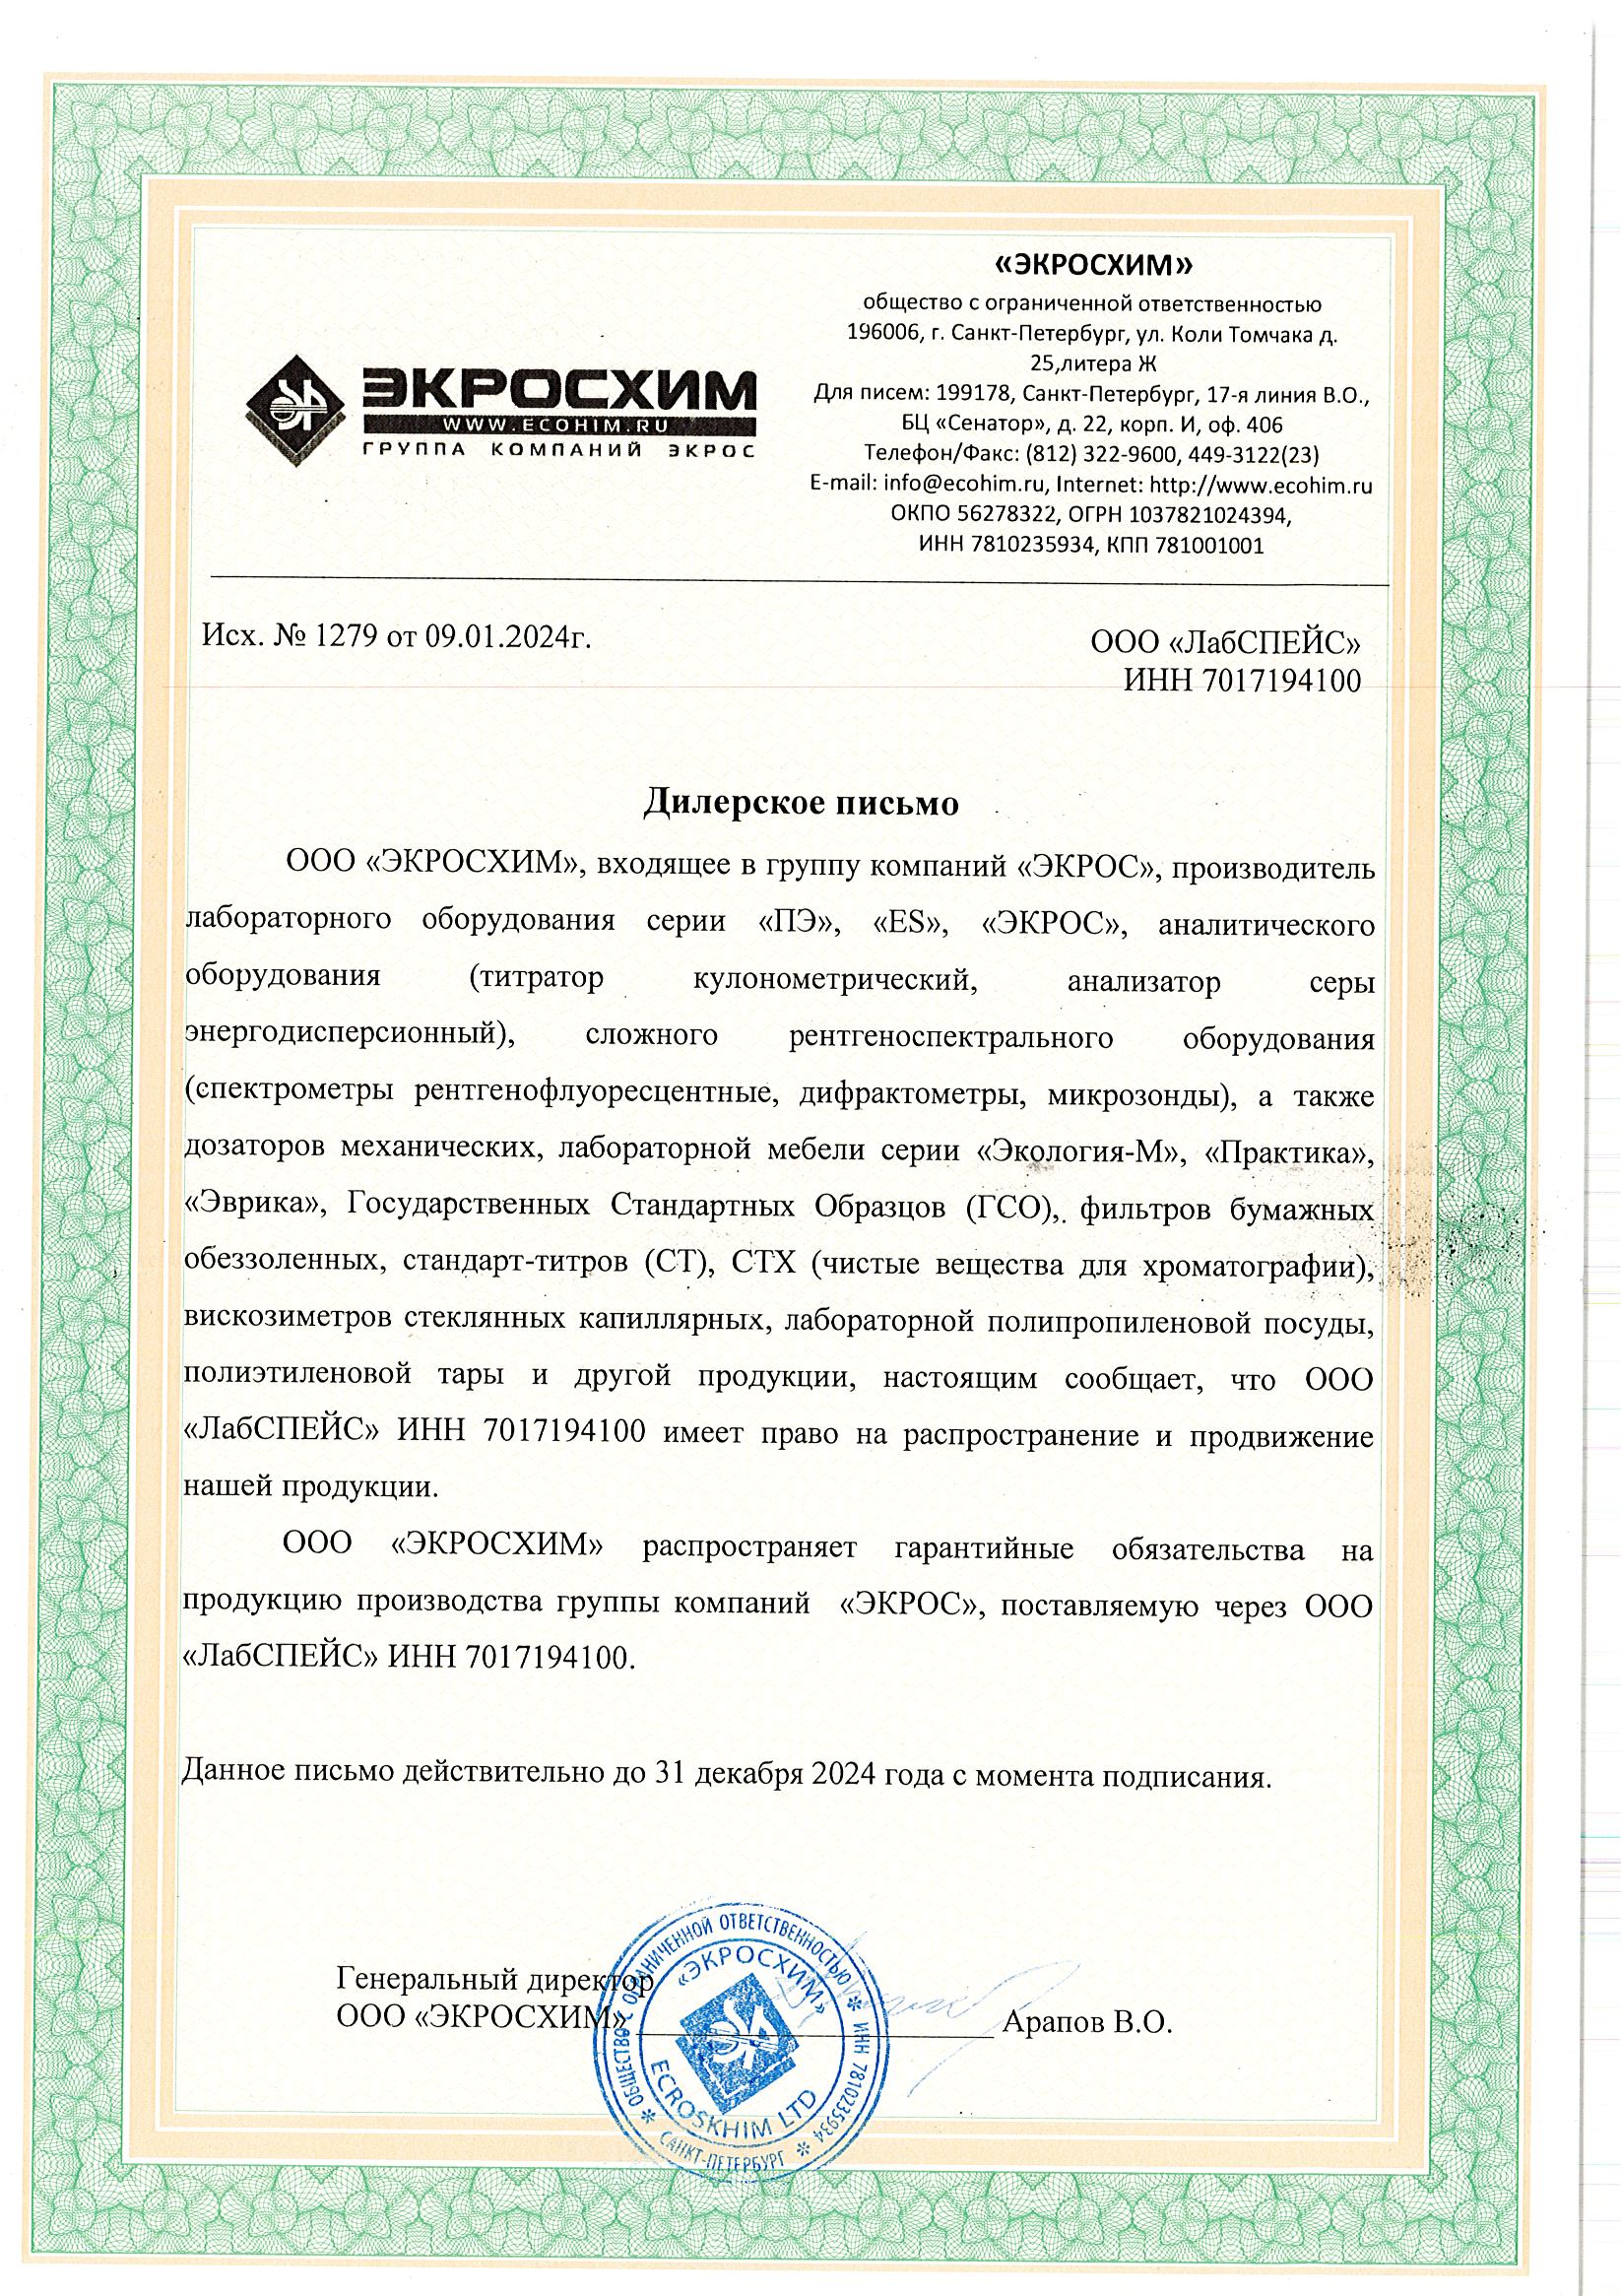 Сертификат «ЭКРОСХИМ»